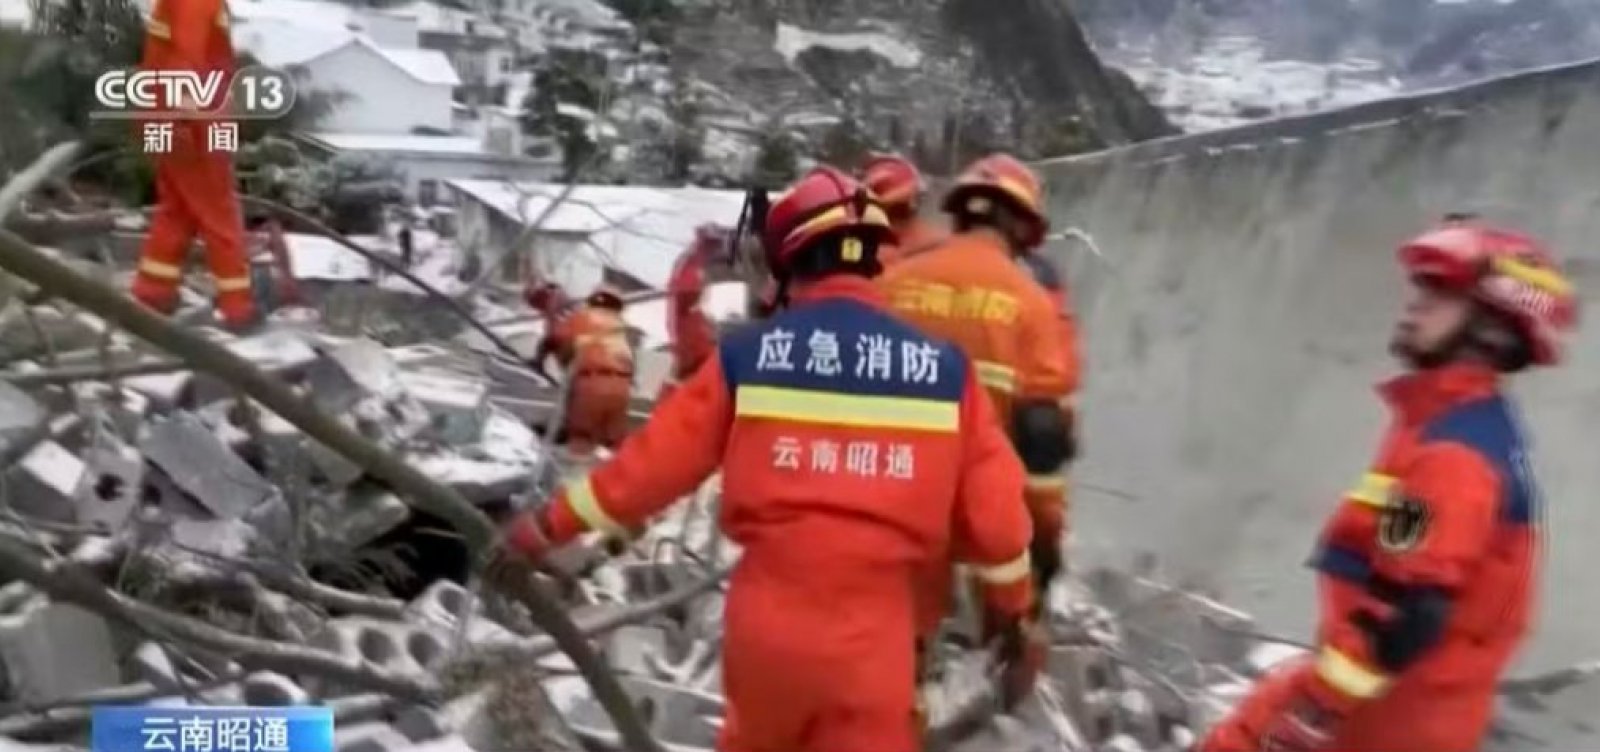 Deslizamento de terra na China deixa 8 mortos e cerca de 50 pessoas feridas